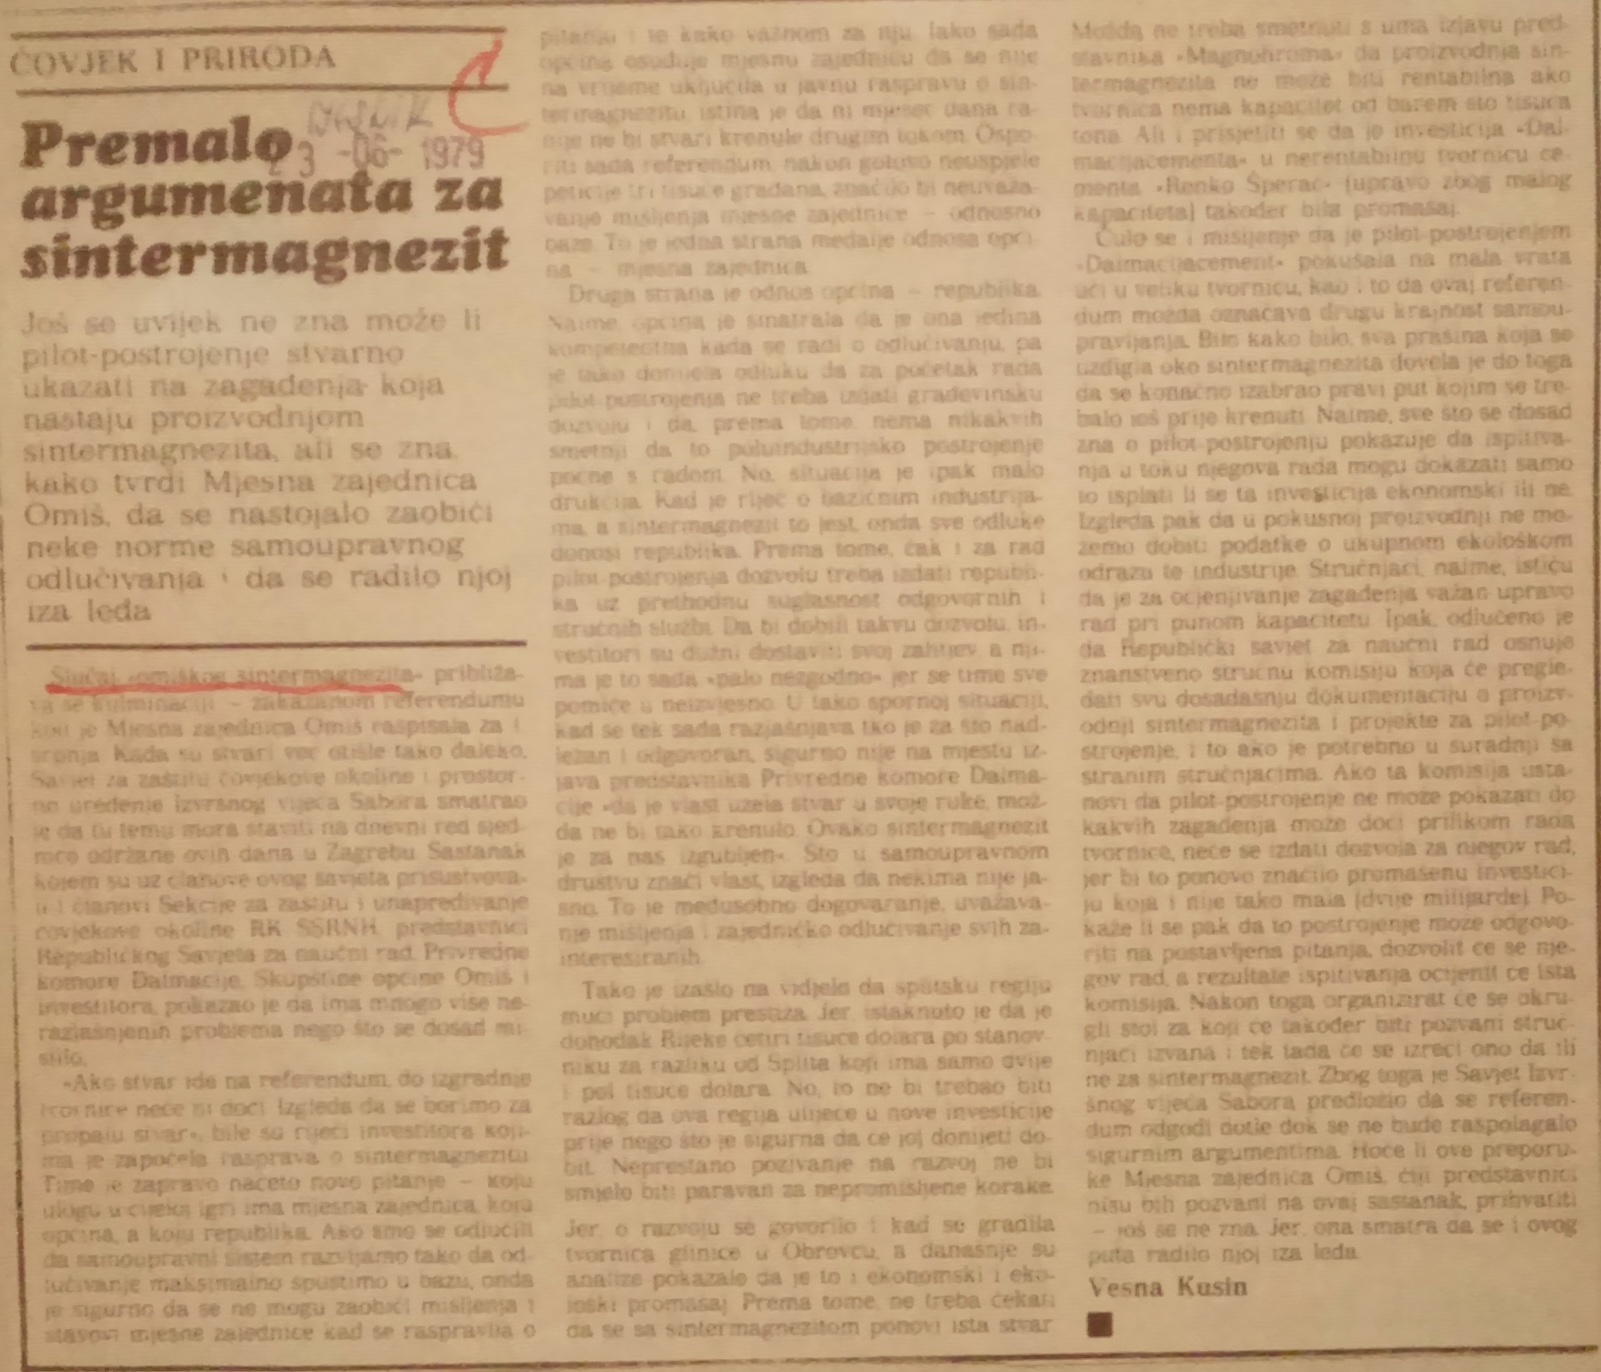 Kusin, Vesna. Premalo argumenata za sintermagnezit, Vjesnik, 23. lipnja 1979. Novinski isječak